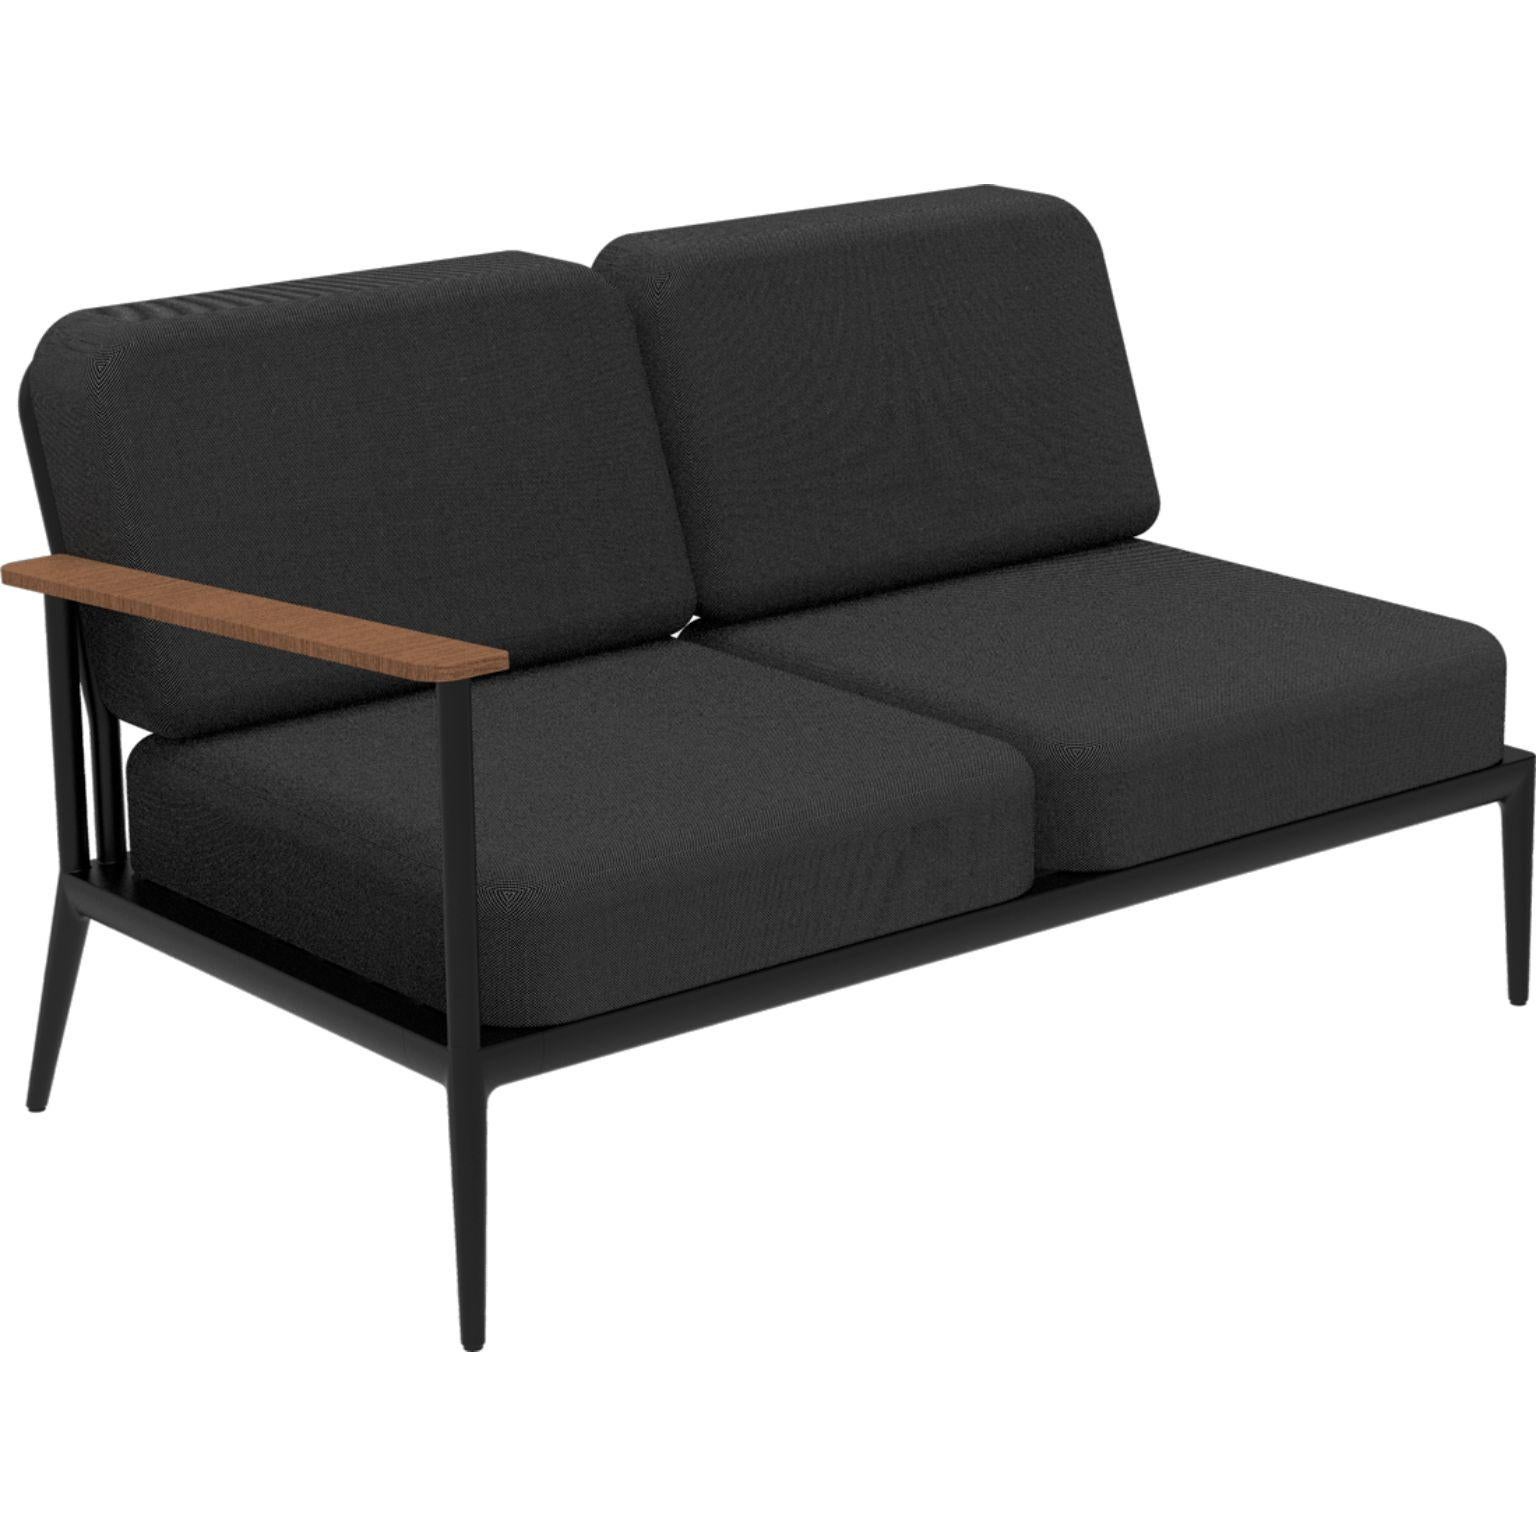 Nature Schwarzes Doppeltes rechtes modulares sofa von MOWEE
Abmessungen: T85 x B144 x H81 cm (Sitzhöhe 42 cm).
MATERIAL: Aluminium, Polsterung und Iroko-Holz.
Gewicht: 29 kg.
Auch in verschiedenen Farben und Ausführungen erhältlich. 

Eine